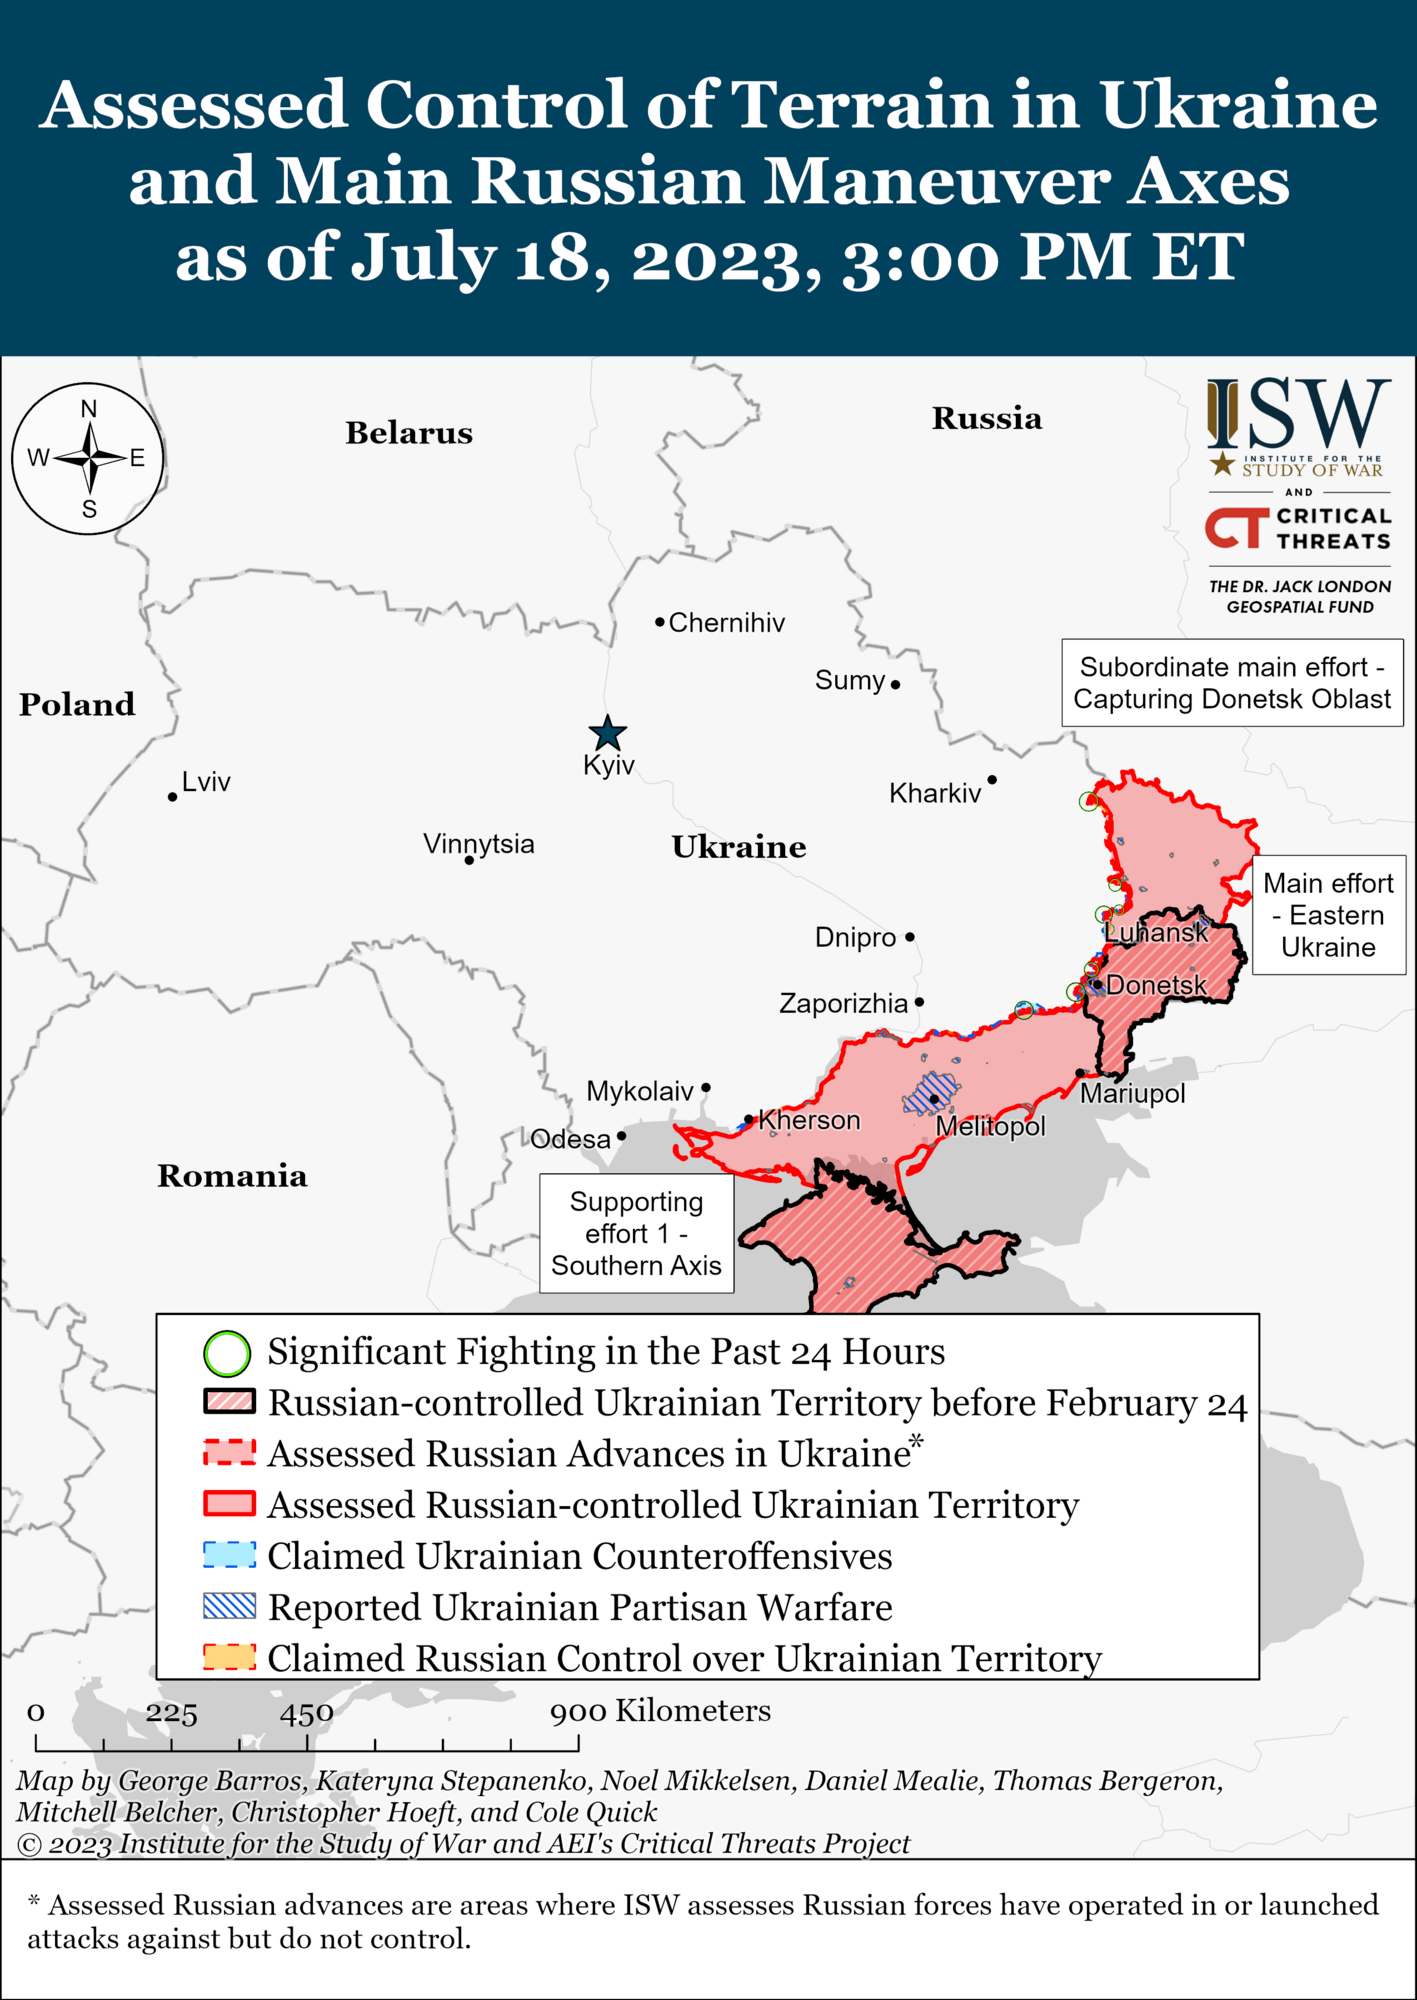 Західні союзники підготували для України 17 бойових бригад, і цей процес триває – Пентагон